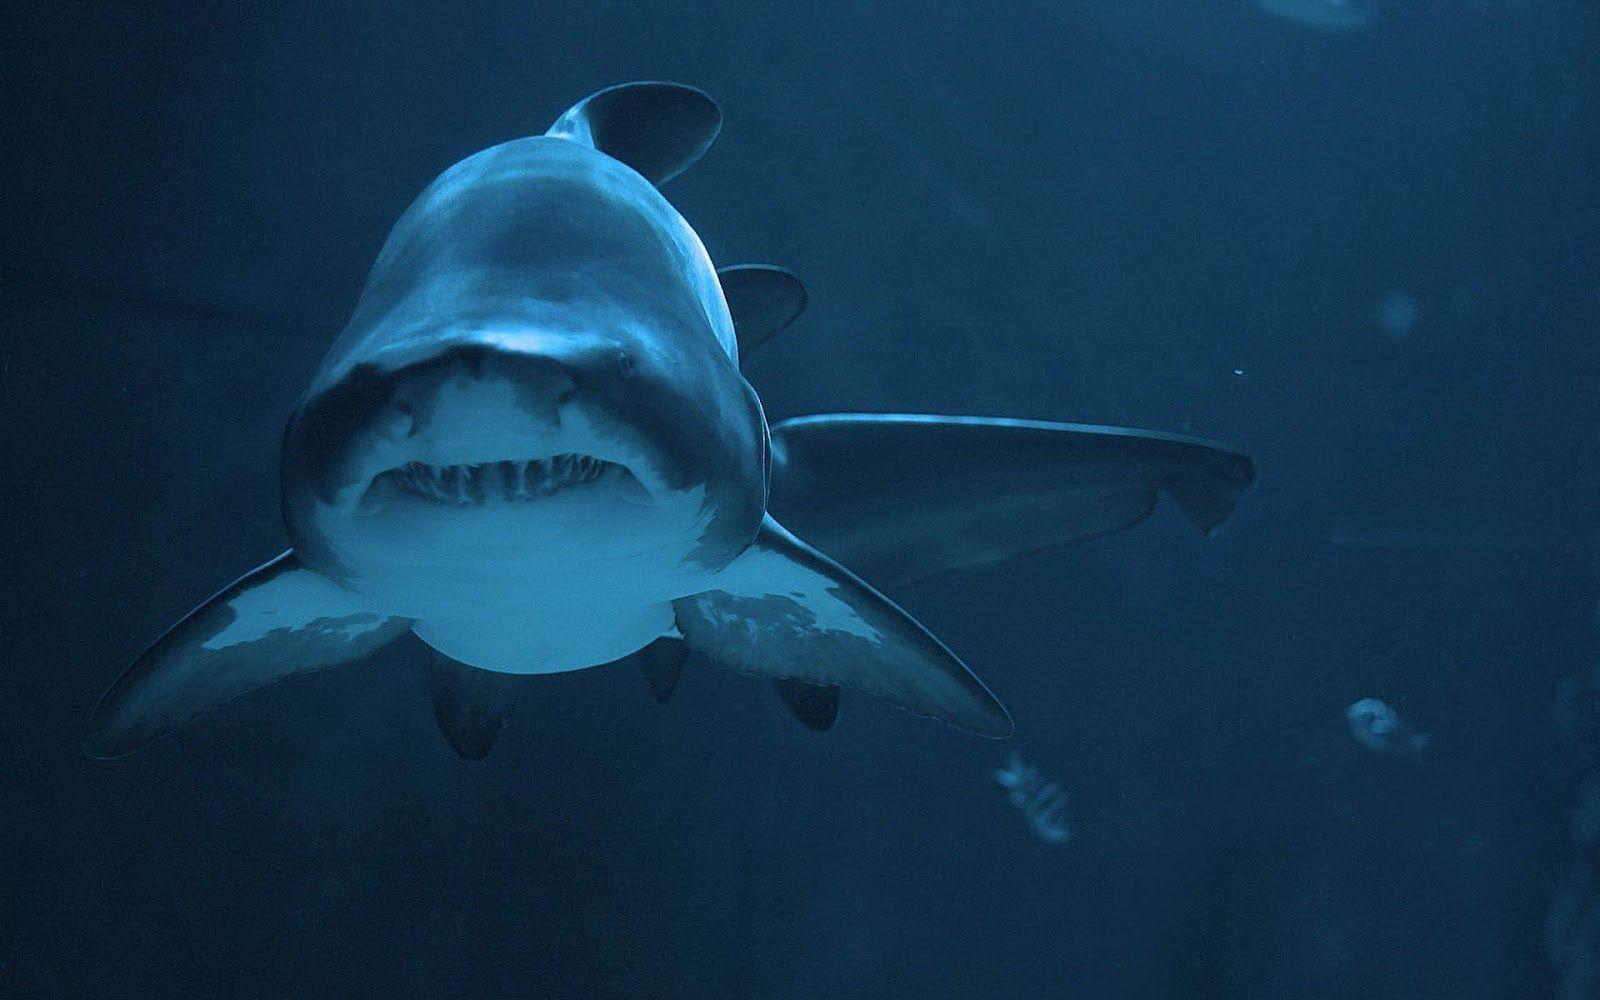 Dangerous shark underwater picture Trends Wallpaper